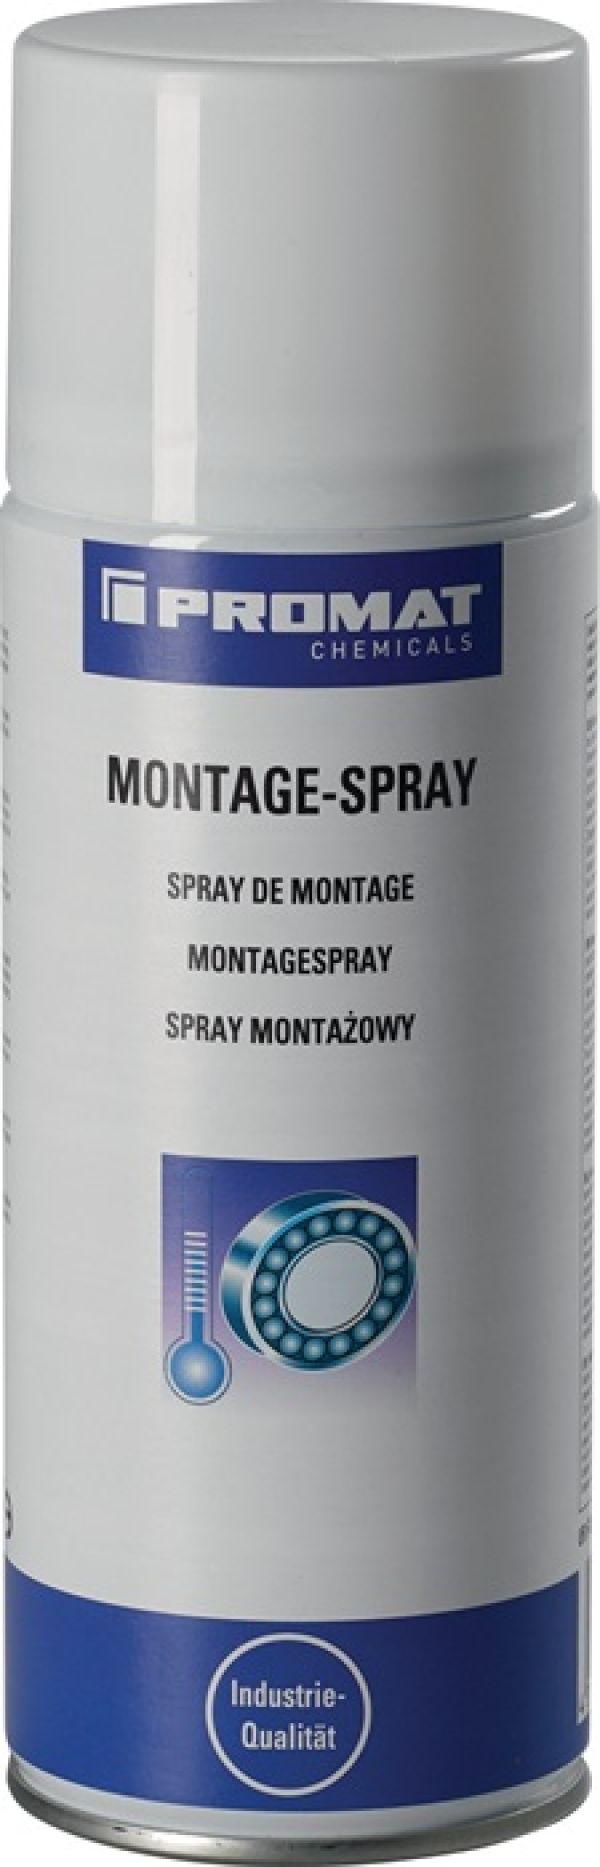 Montagespray 400 ml gelblich Spraydose PROMAT CHEMICALS